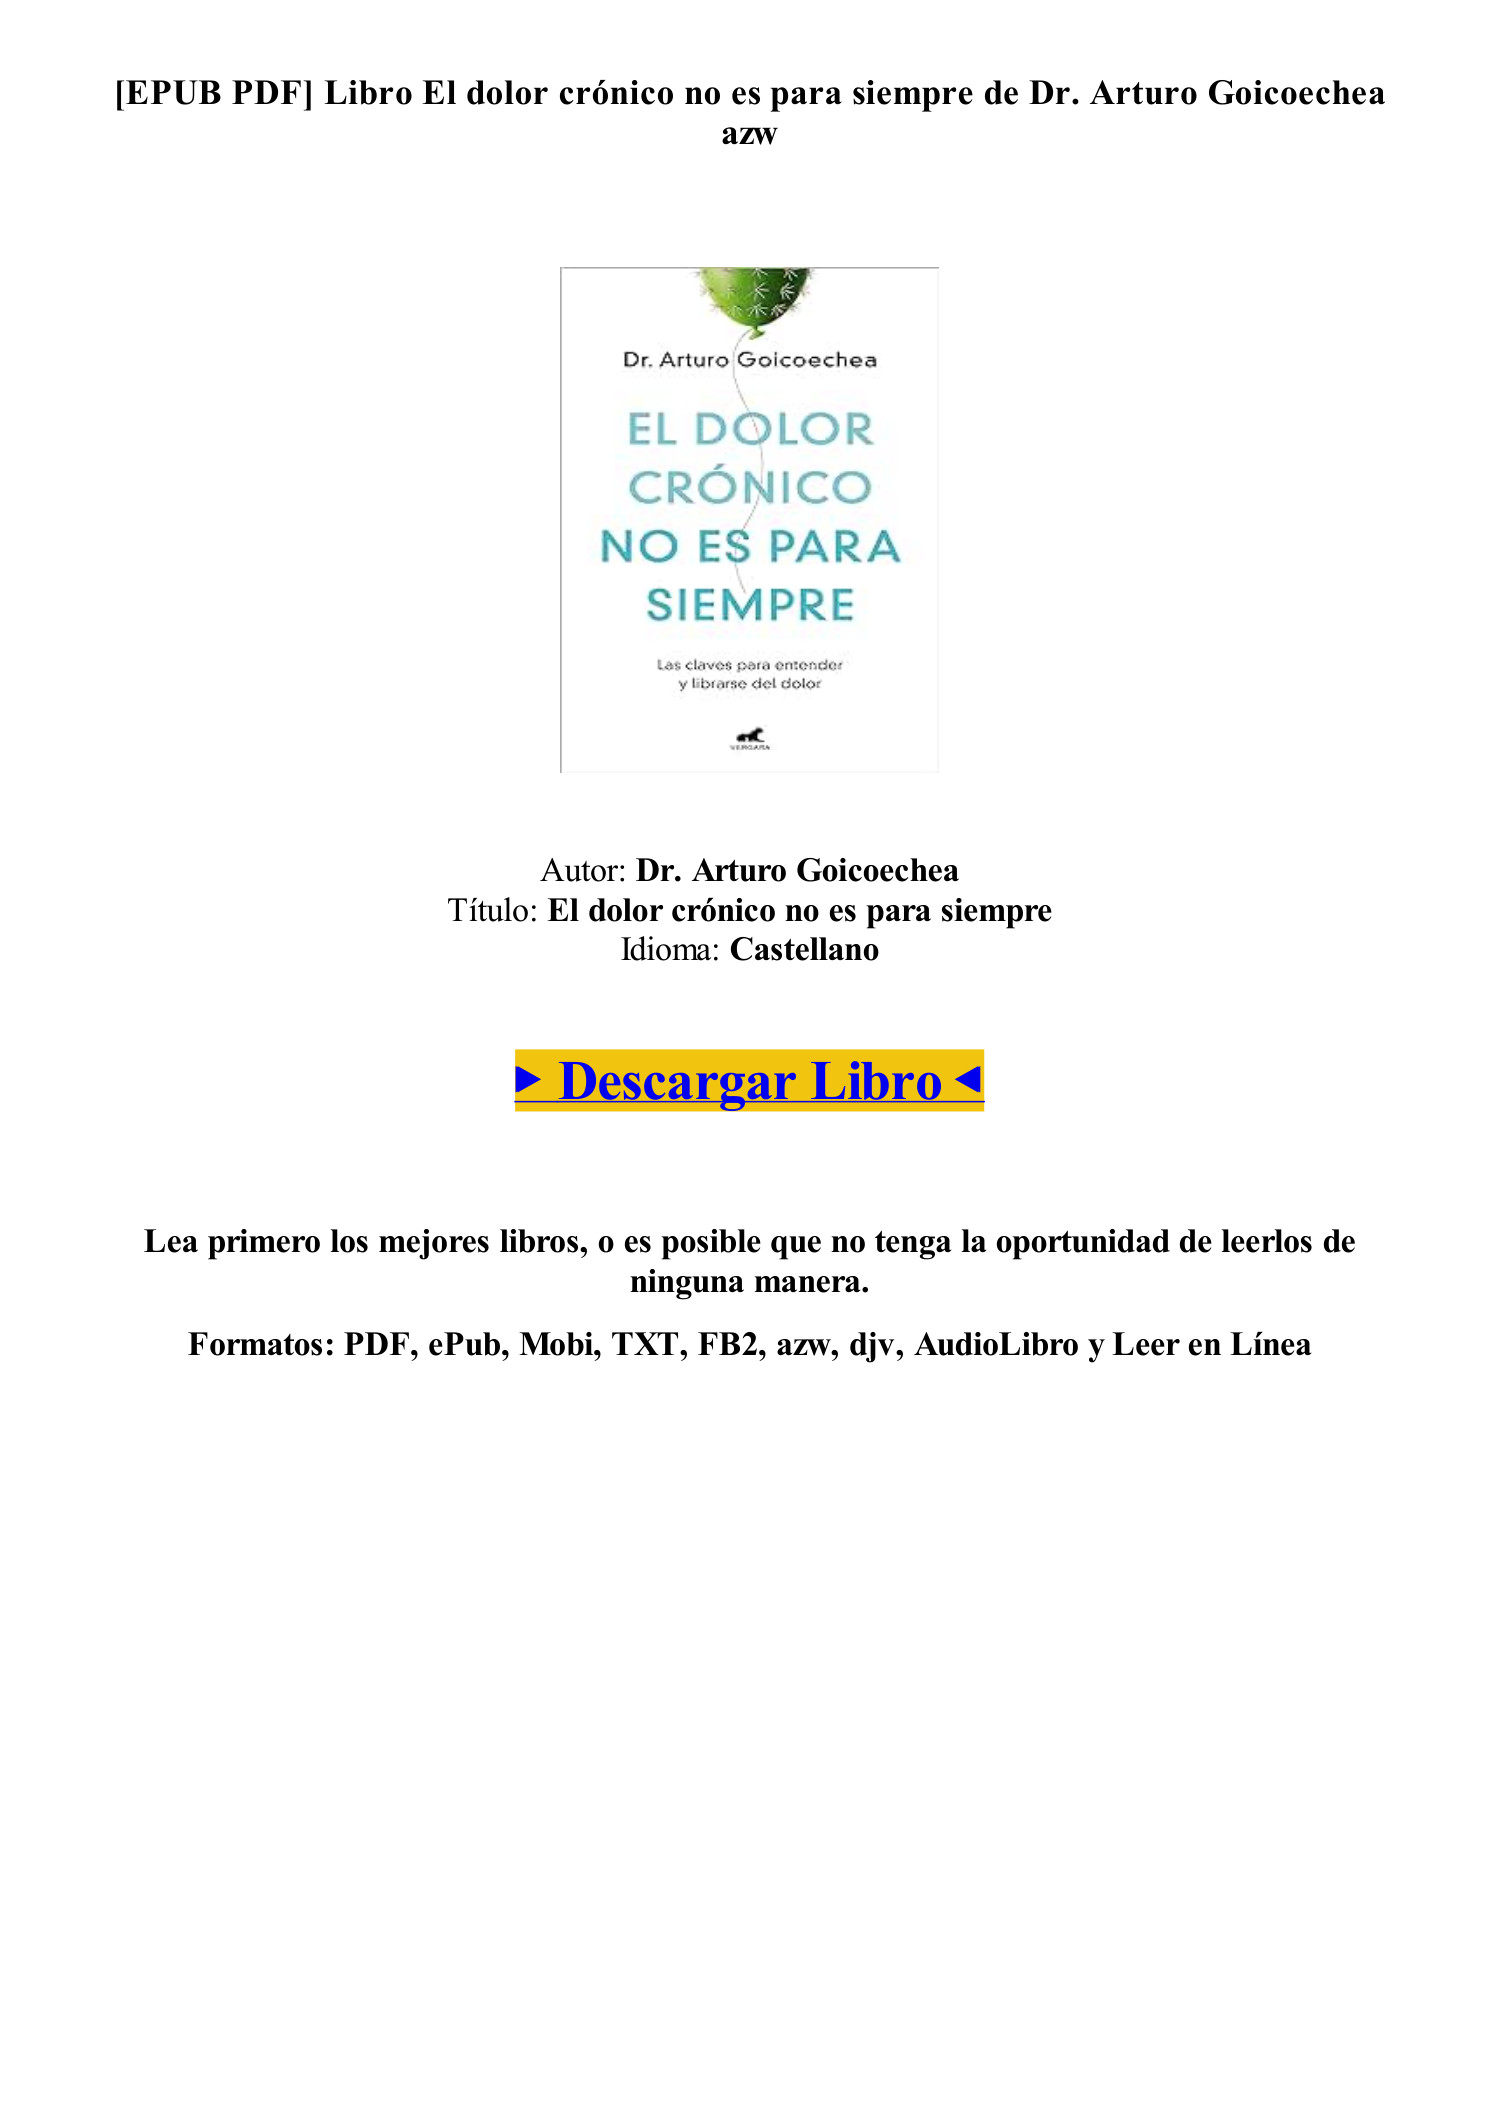  El dolor crónico no es para siempre: Las claves para entender y  librarse del dolor (Spanish Edition) eBook : Goicoechea, Dr. Arturo: Kindle  Store